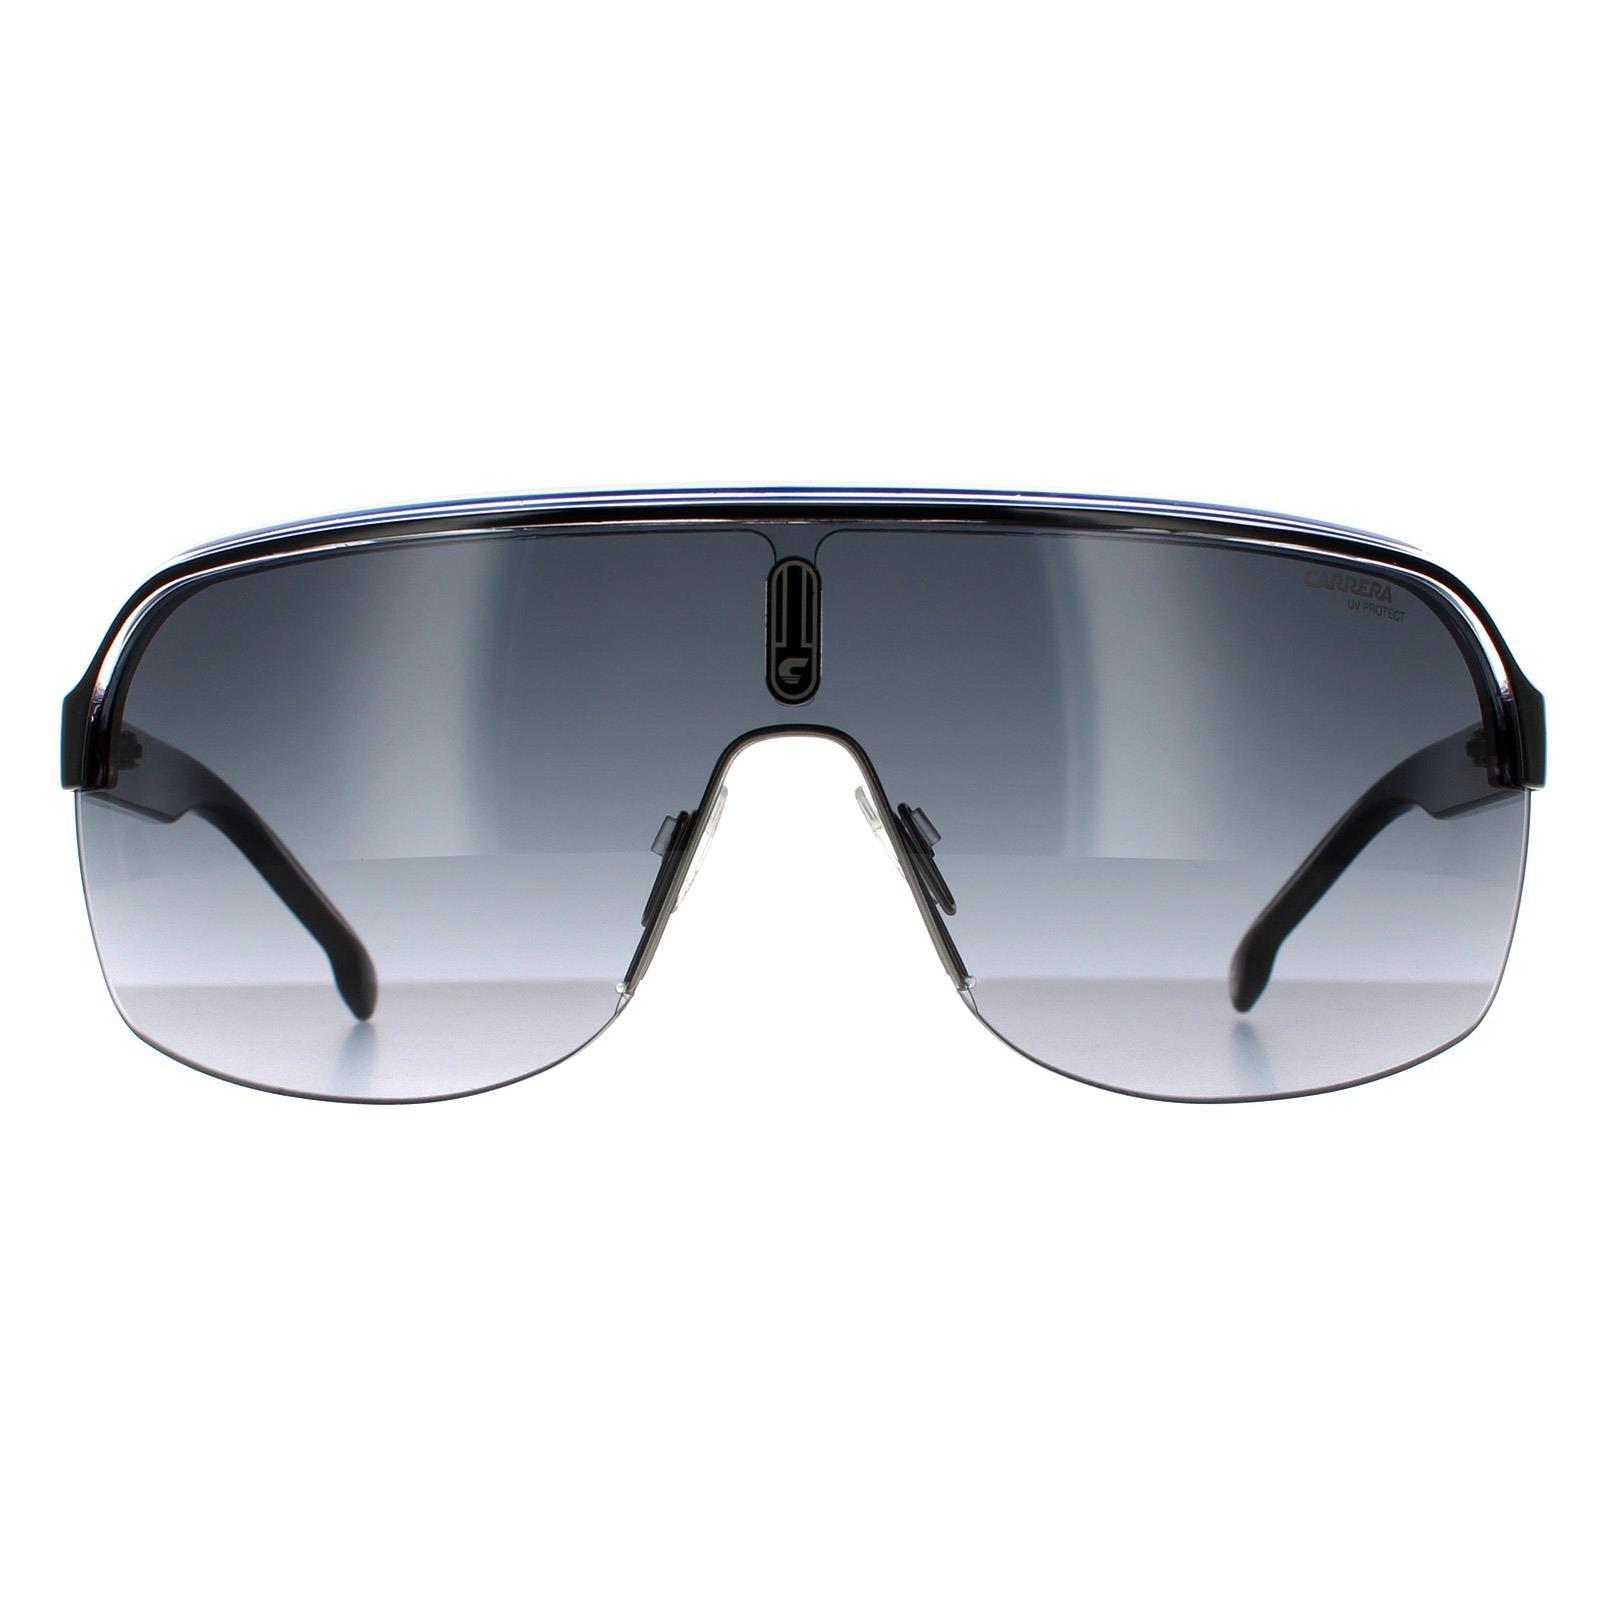 черные солнцезащитные очки на клипсе off white цвет black dark grey Черные кристально-белые синие темно-серые солнцезащитные очки с градиентом Shield Carrera, черный